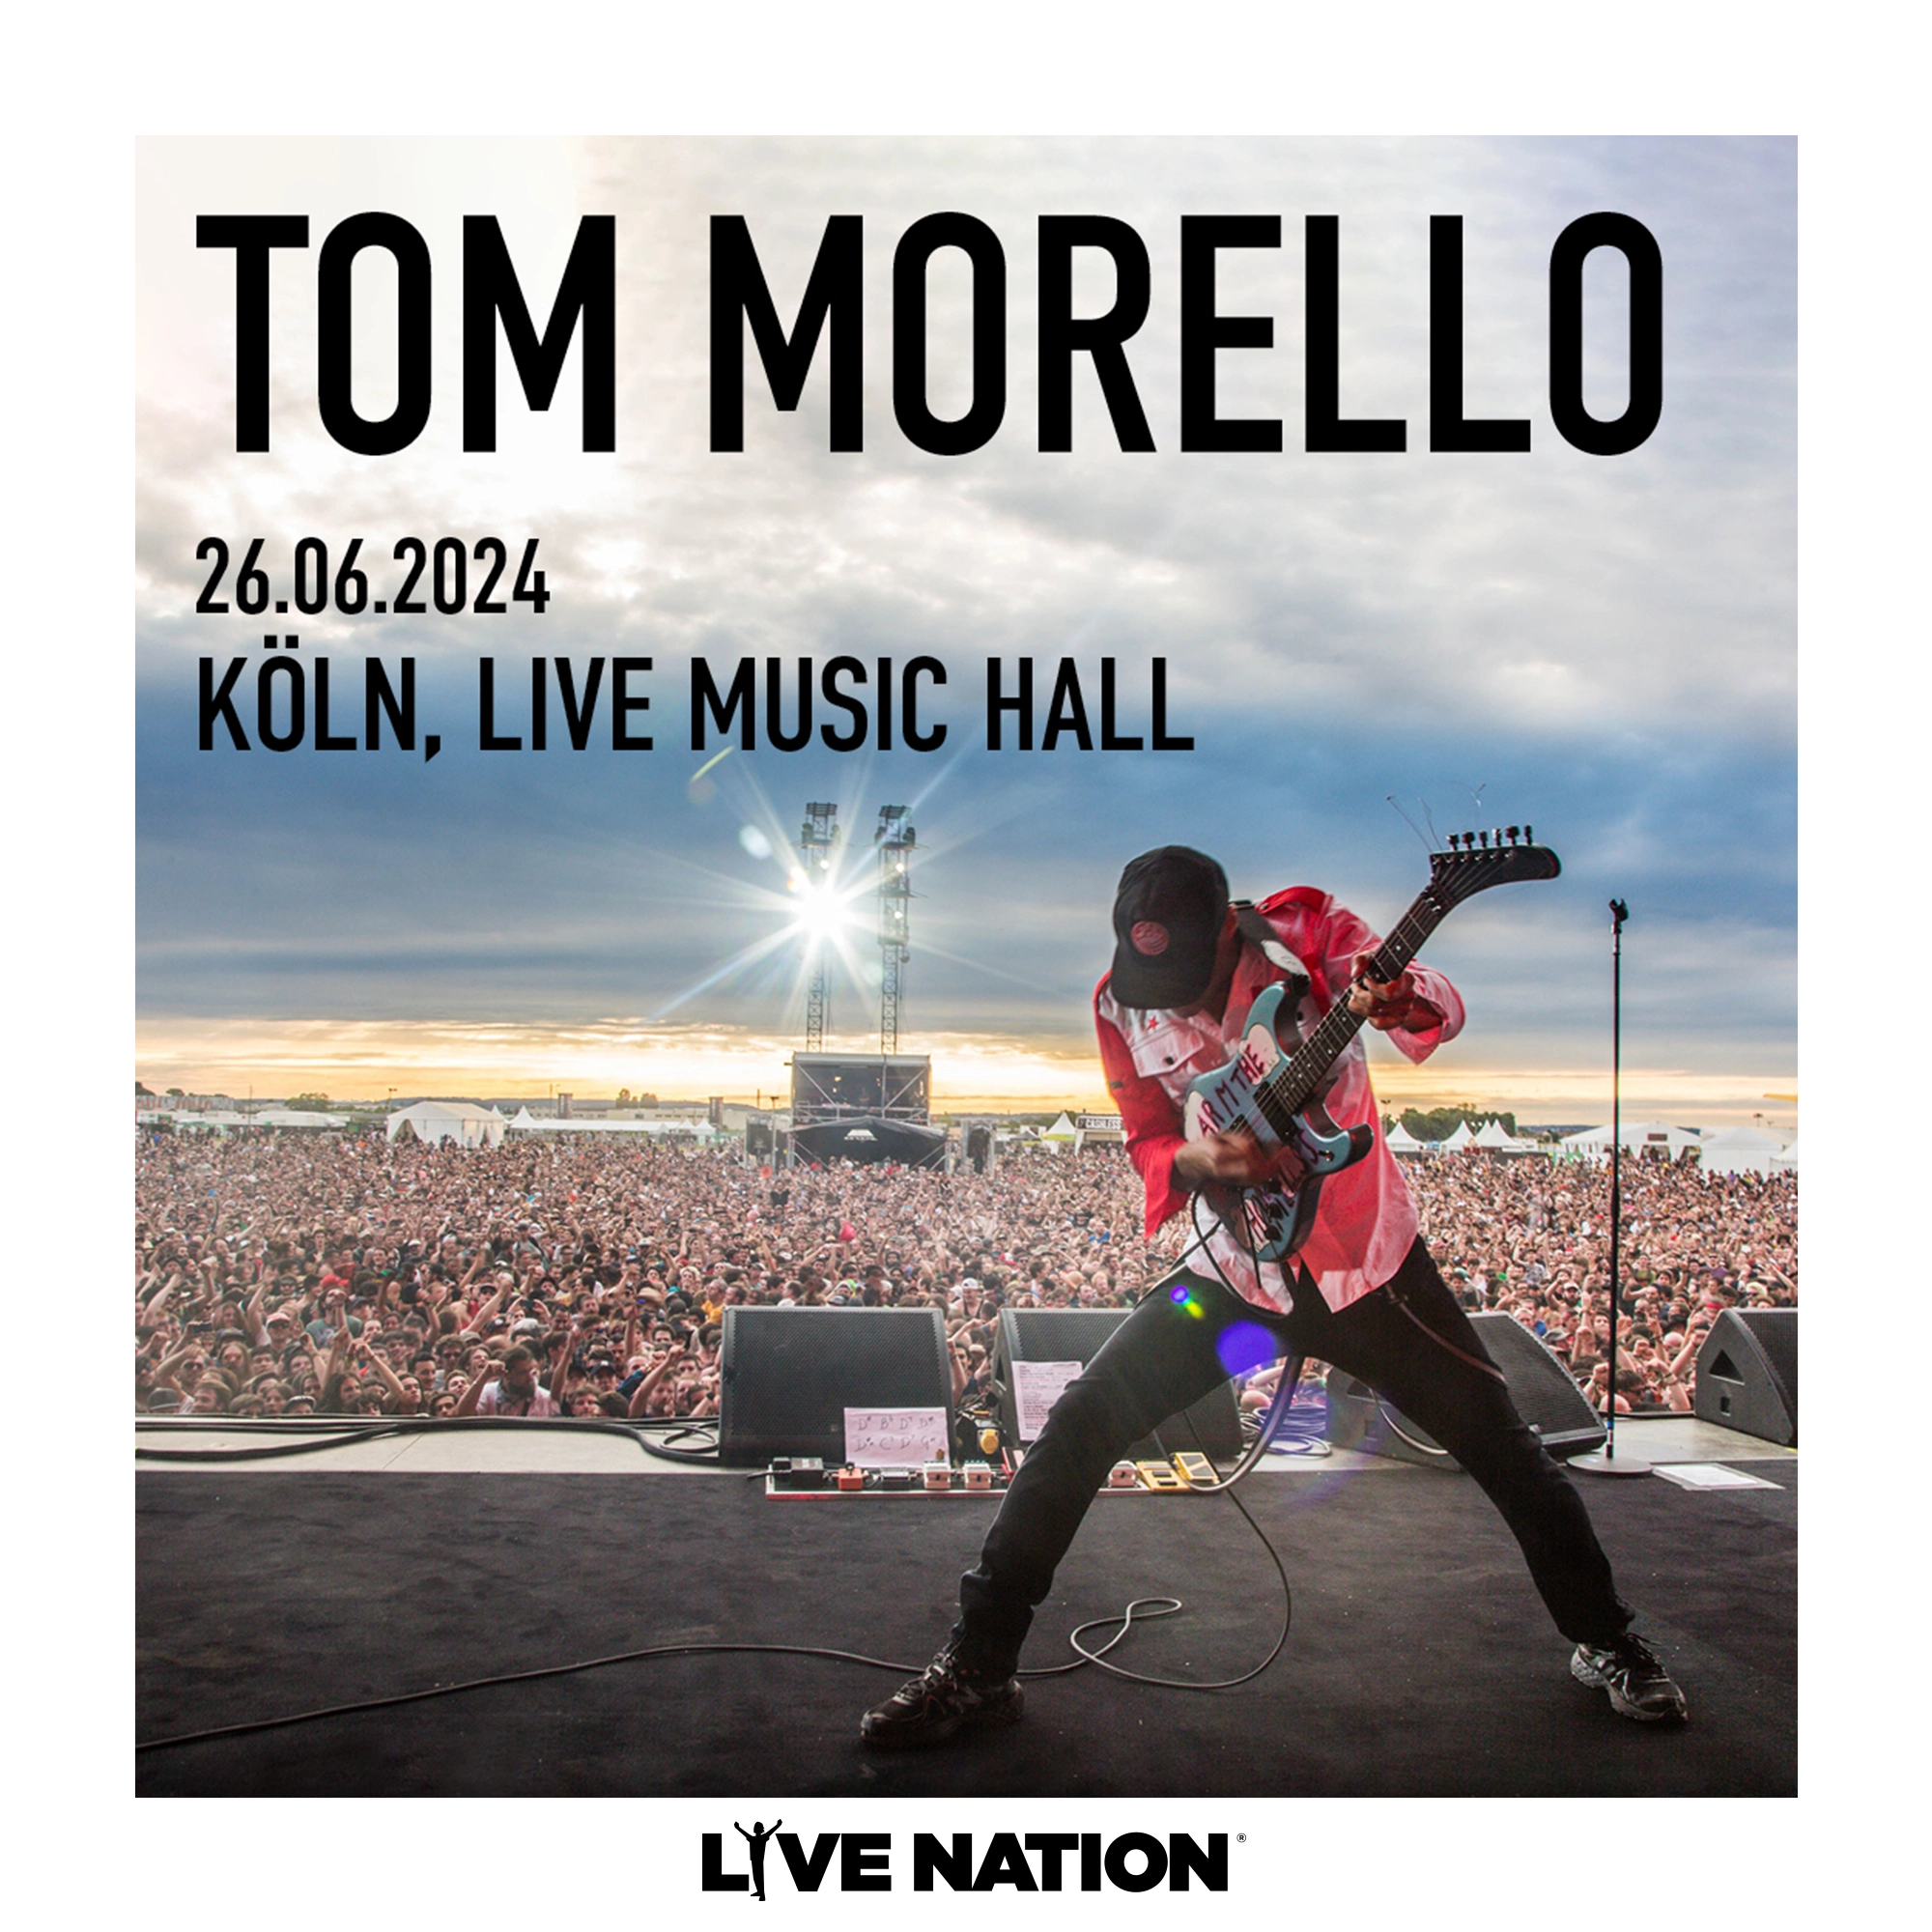 Tom Morello in der Live Music Hall Tickets